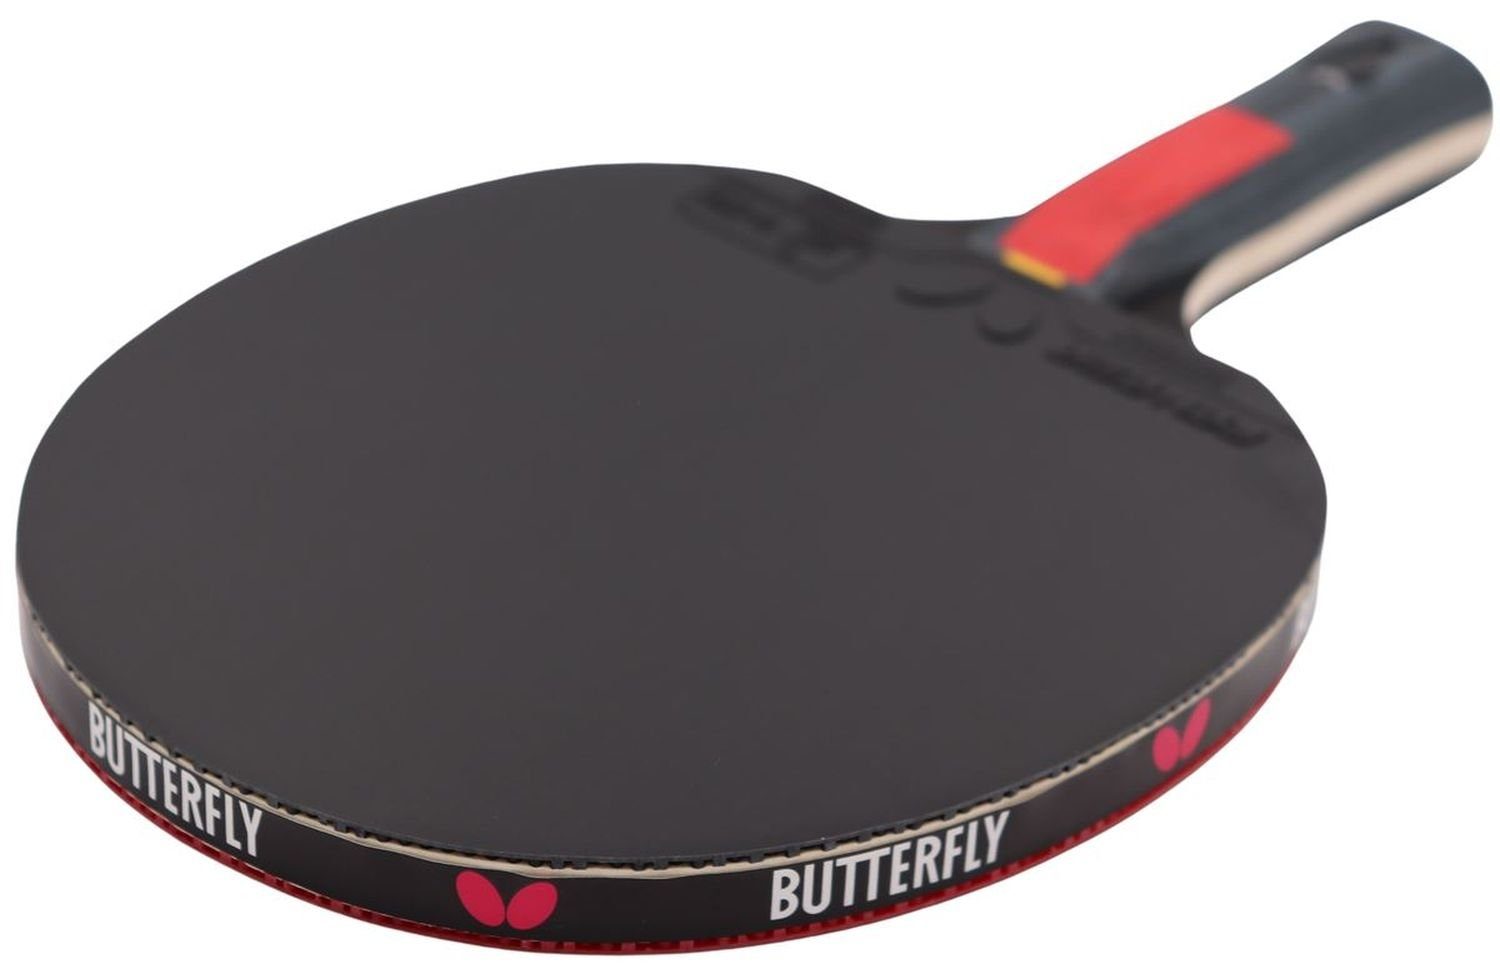 Butterfly Tischtennisschläger Ovtcharov Racket Schläger Ruby, Tischtennis Tennis Bat Table